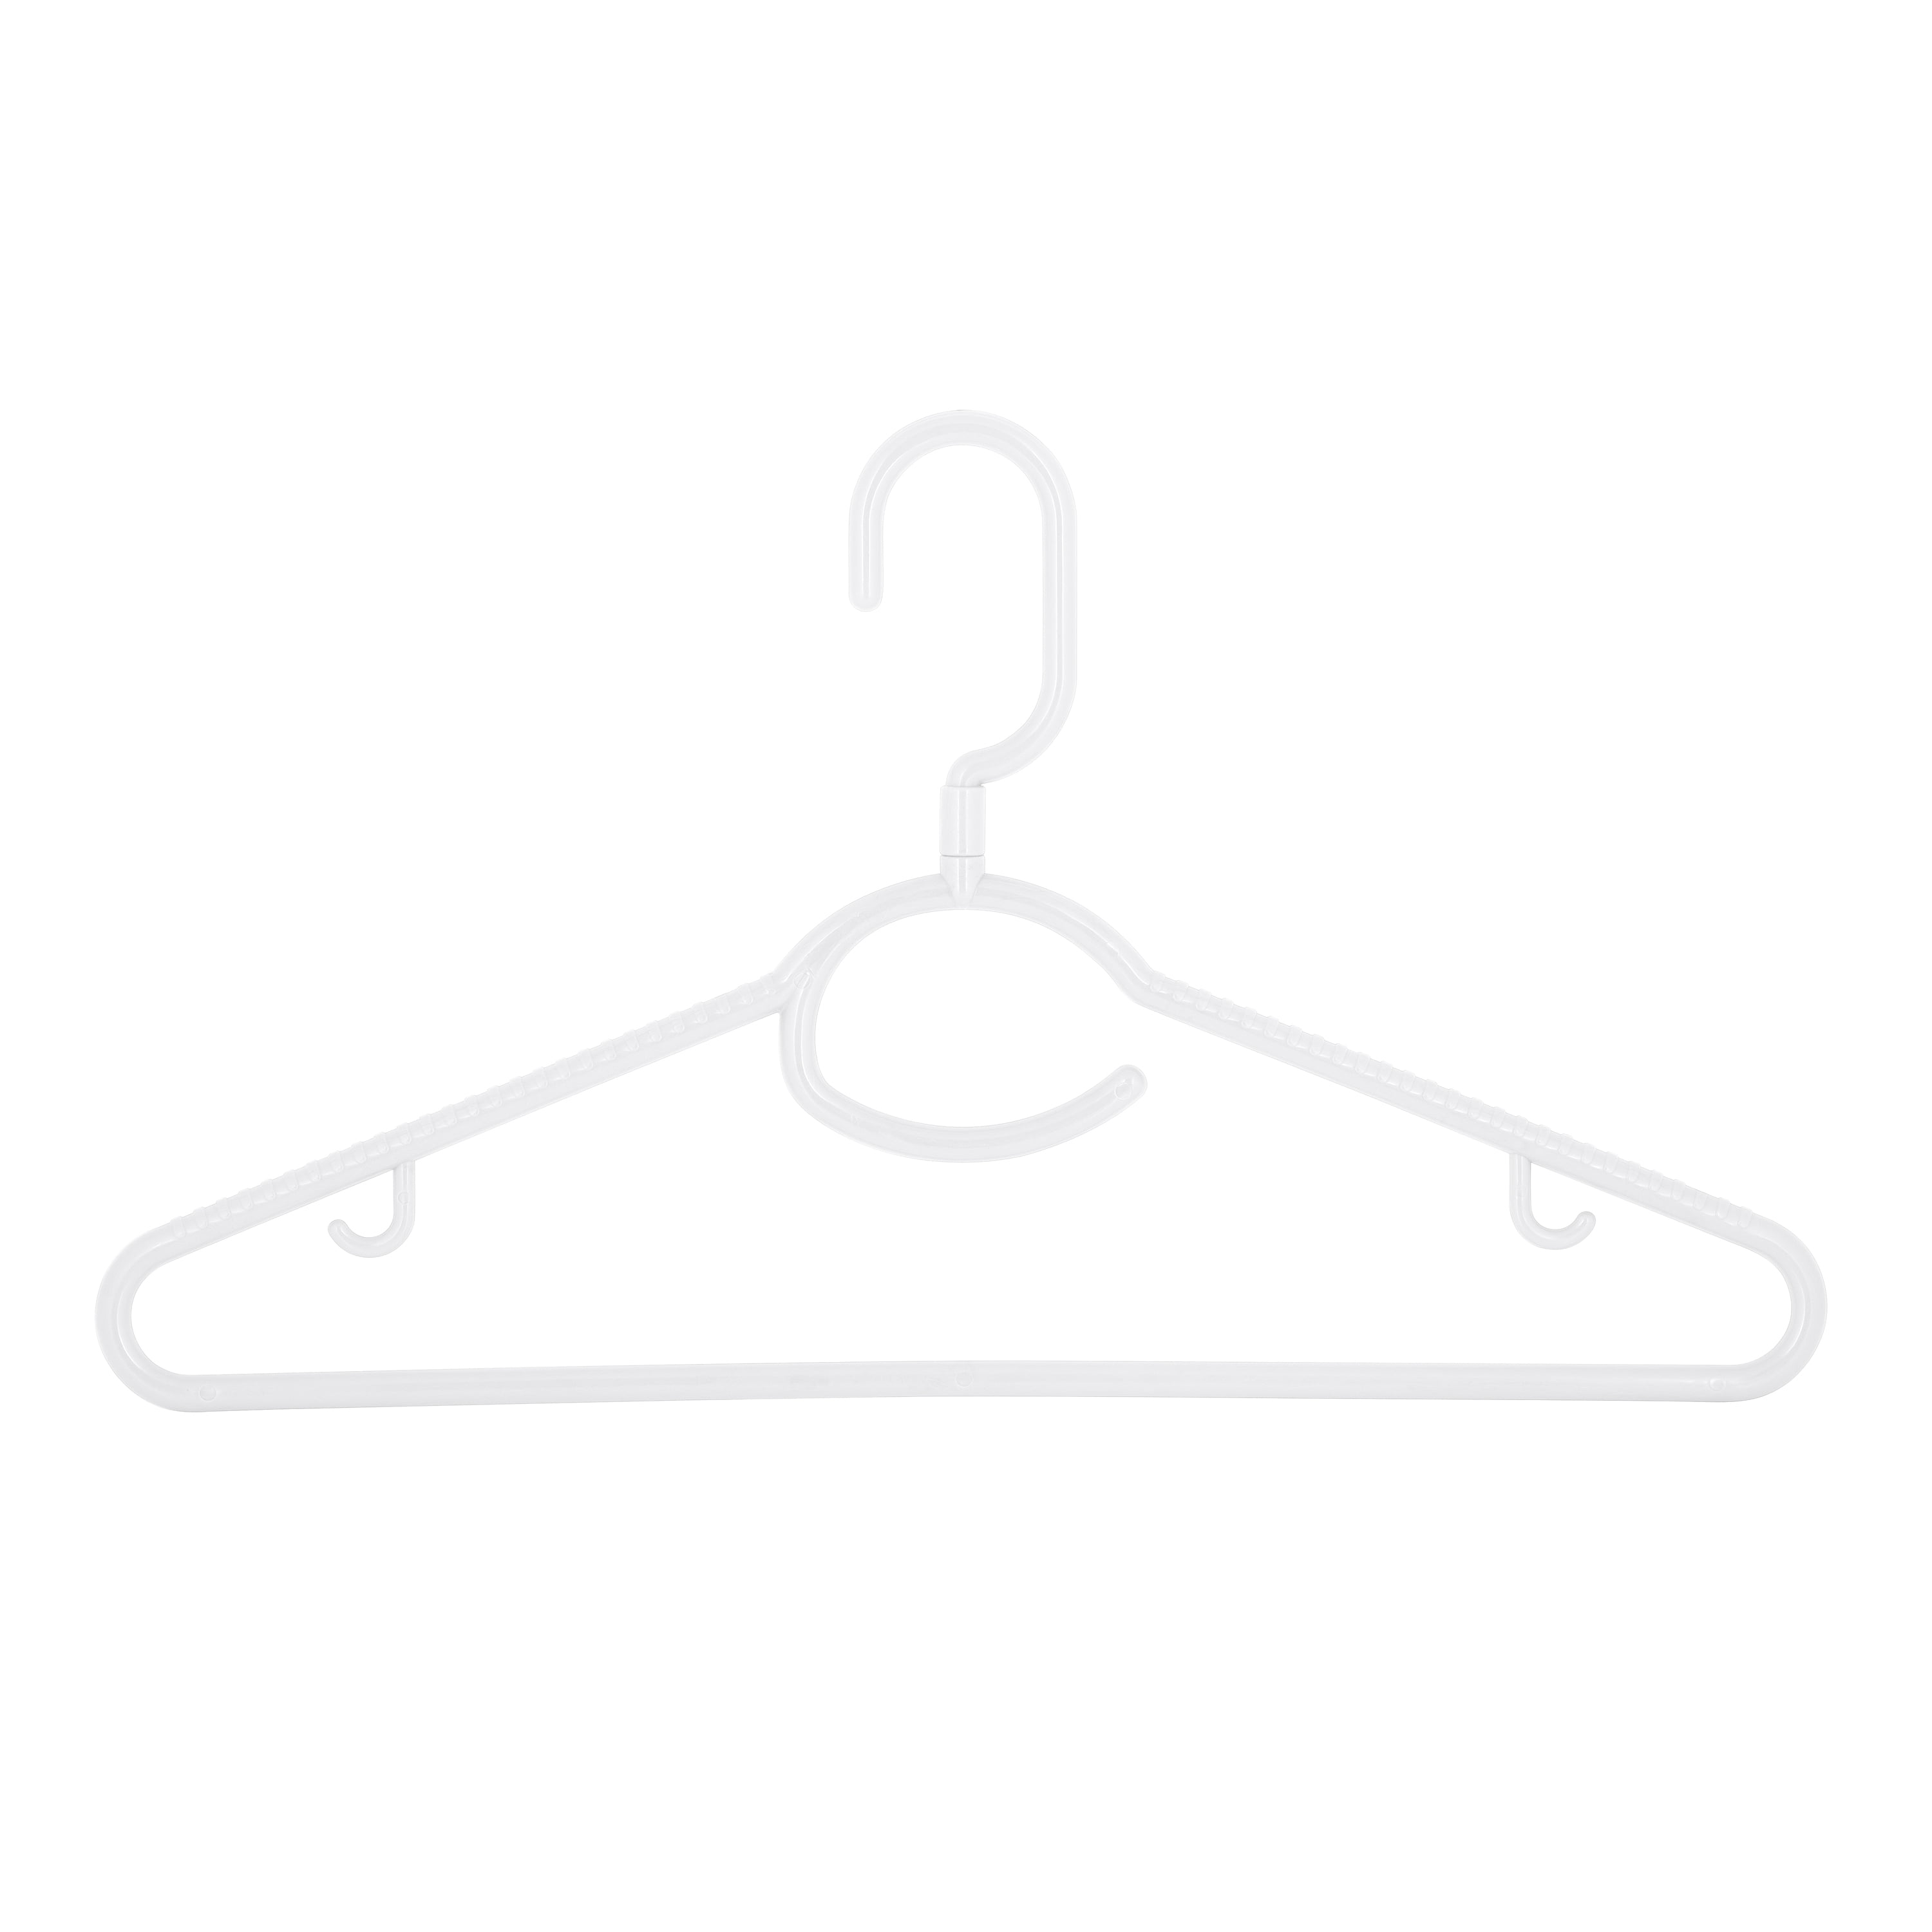 Mainstays Non-Slip Clothing Hangers, 5 Pack, Swivel Neck, White